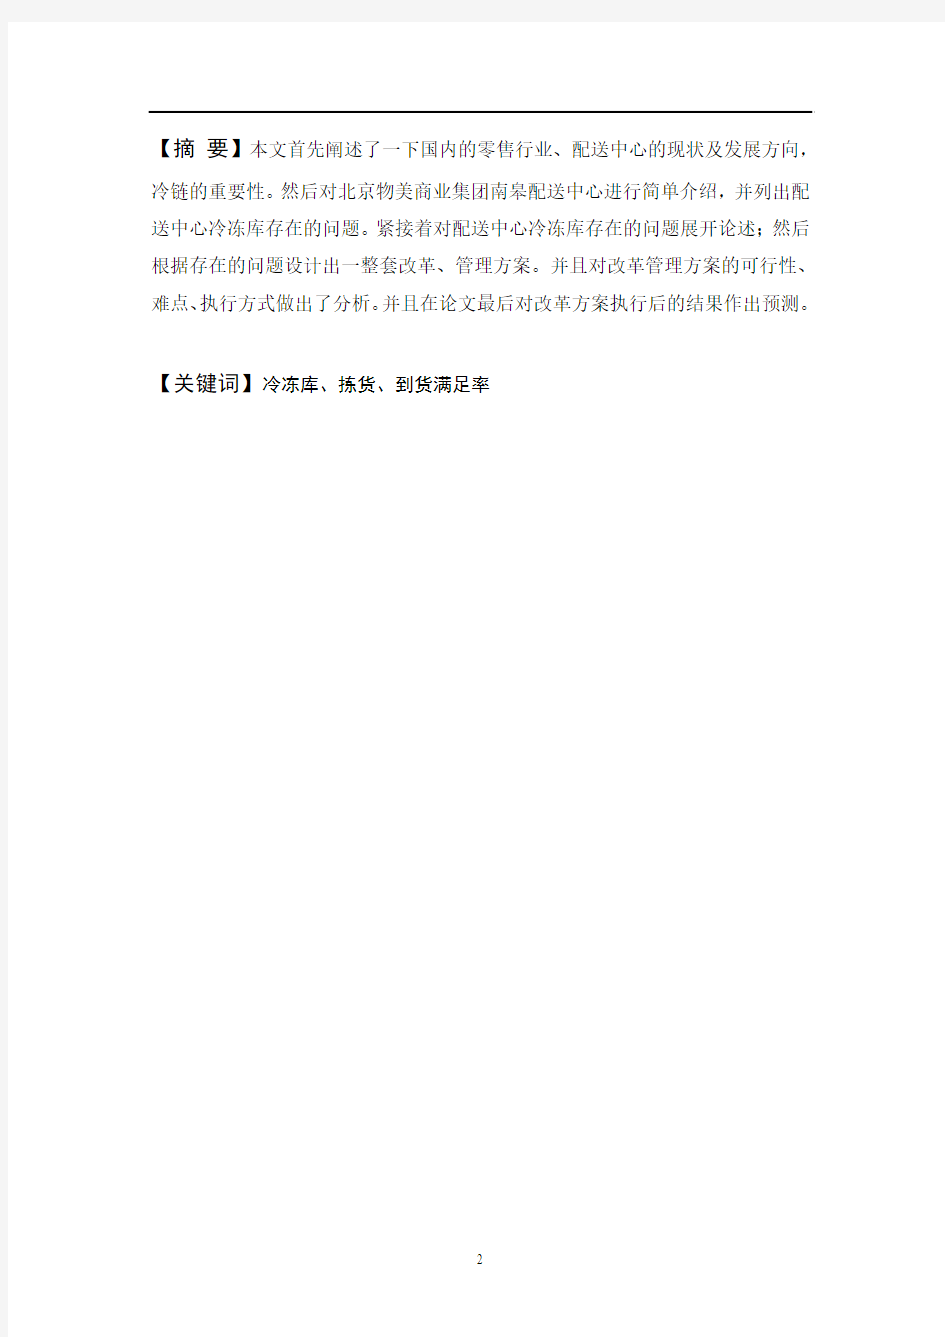 北京物美商业集团冷冻库管理